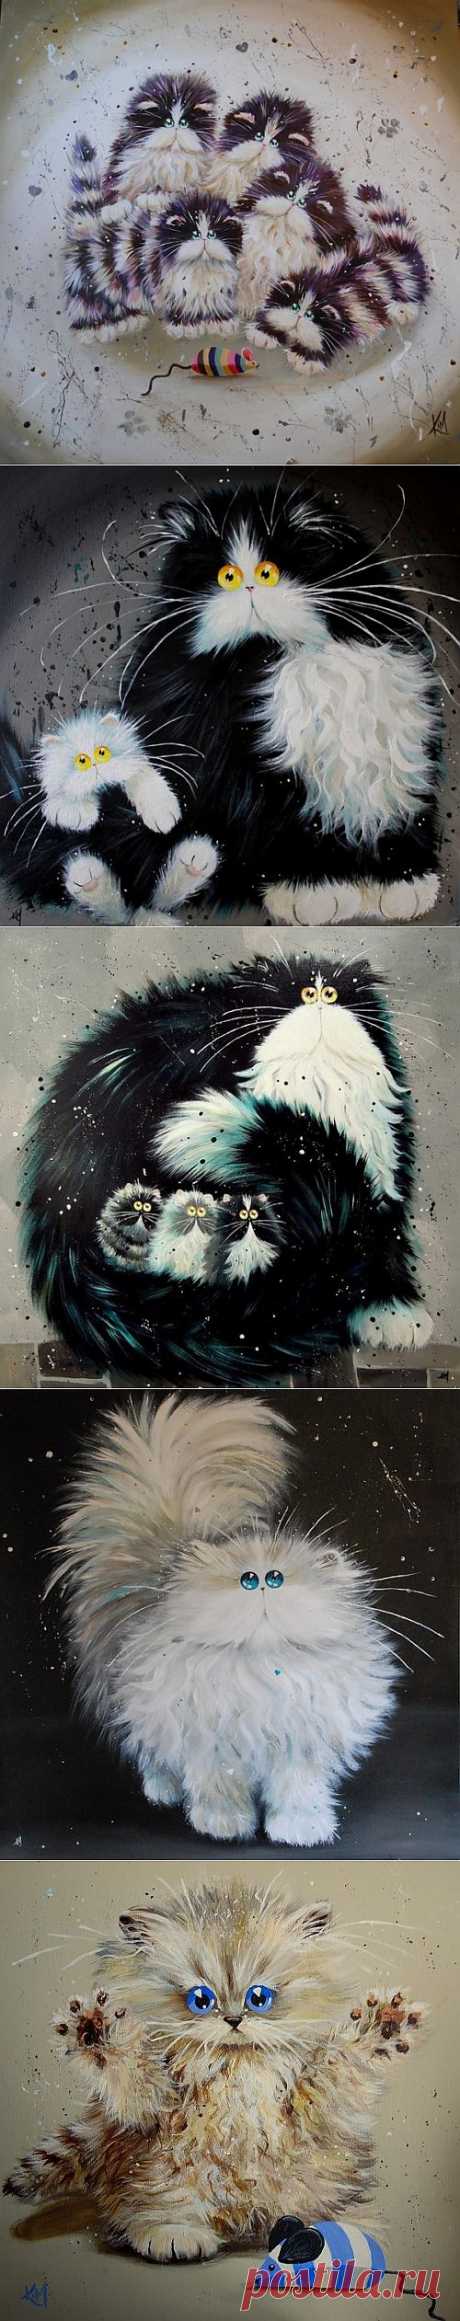 Забавные коты и кошки от Ким Хаскинс (20 картин)